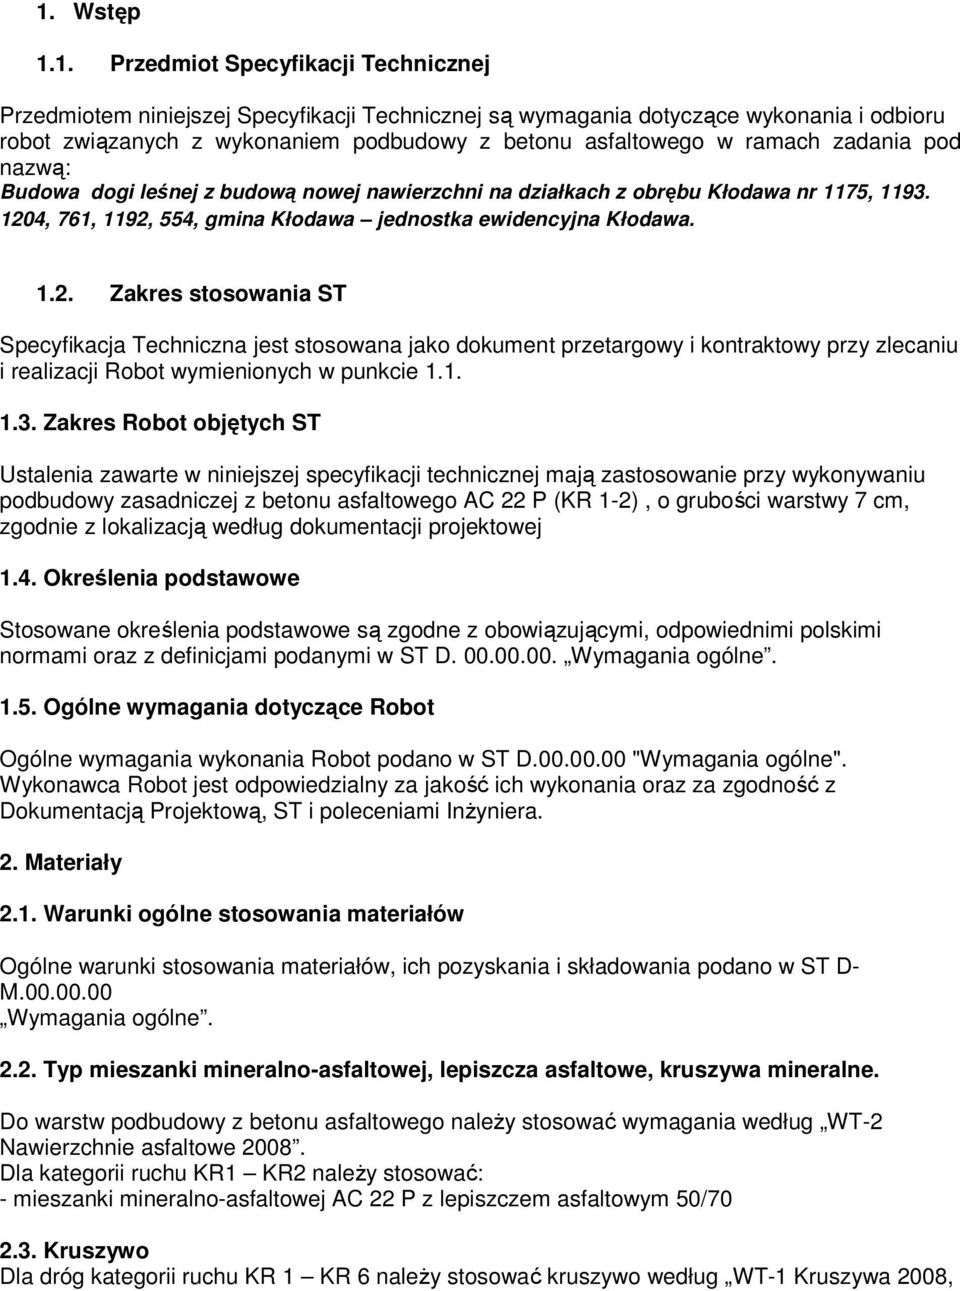 4, 761, 1192, 554, gmina Kłodawa jednostka ewidencyjna Kłodawa. 1.2. Zakres stosowania ST Specyfikacja Techniczna jest stosowana jako dokument przetargowy i kontraktowy przy zlecaniu i realizacji Robot wymienionych w punkcie 1.